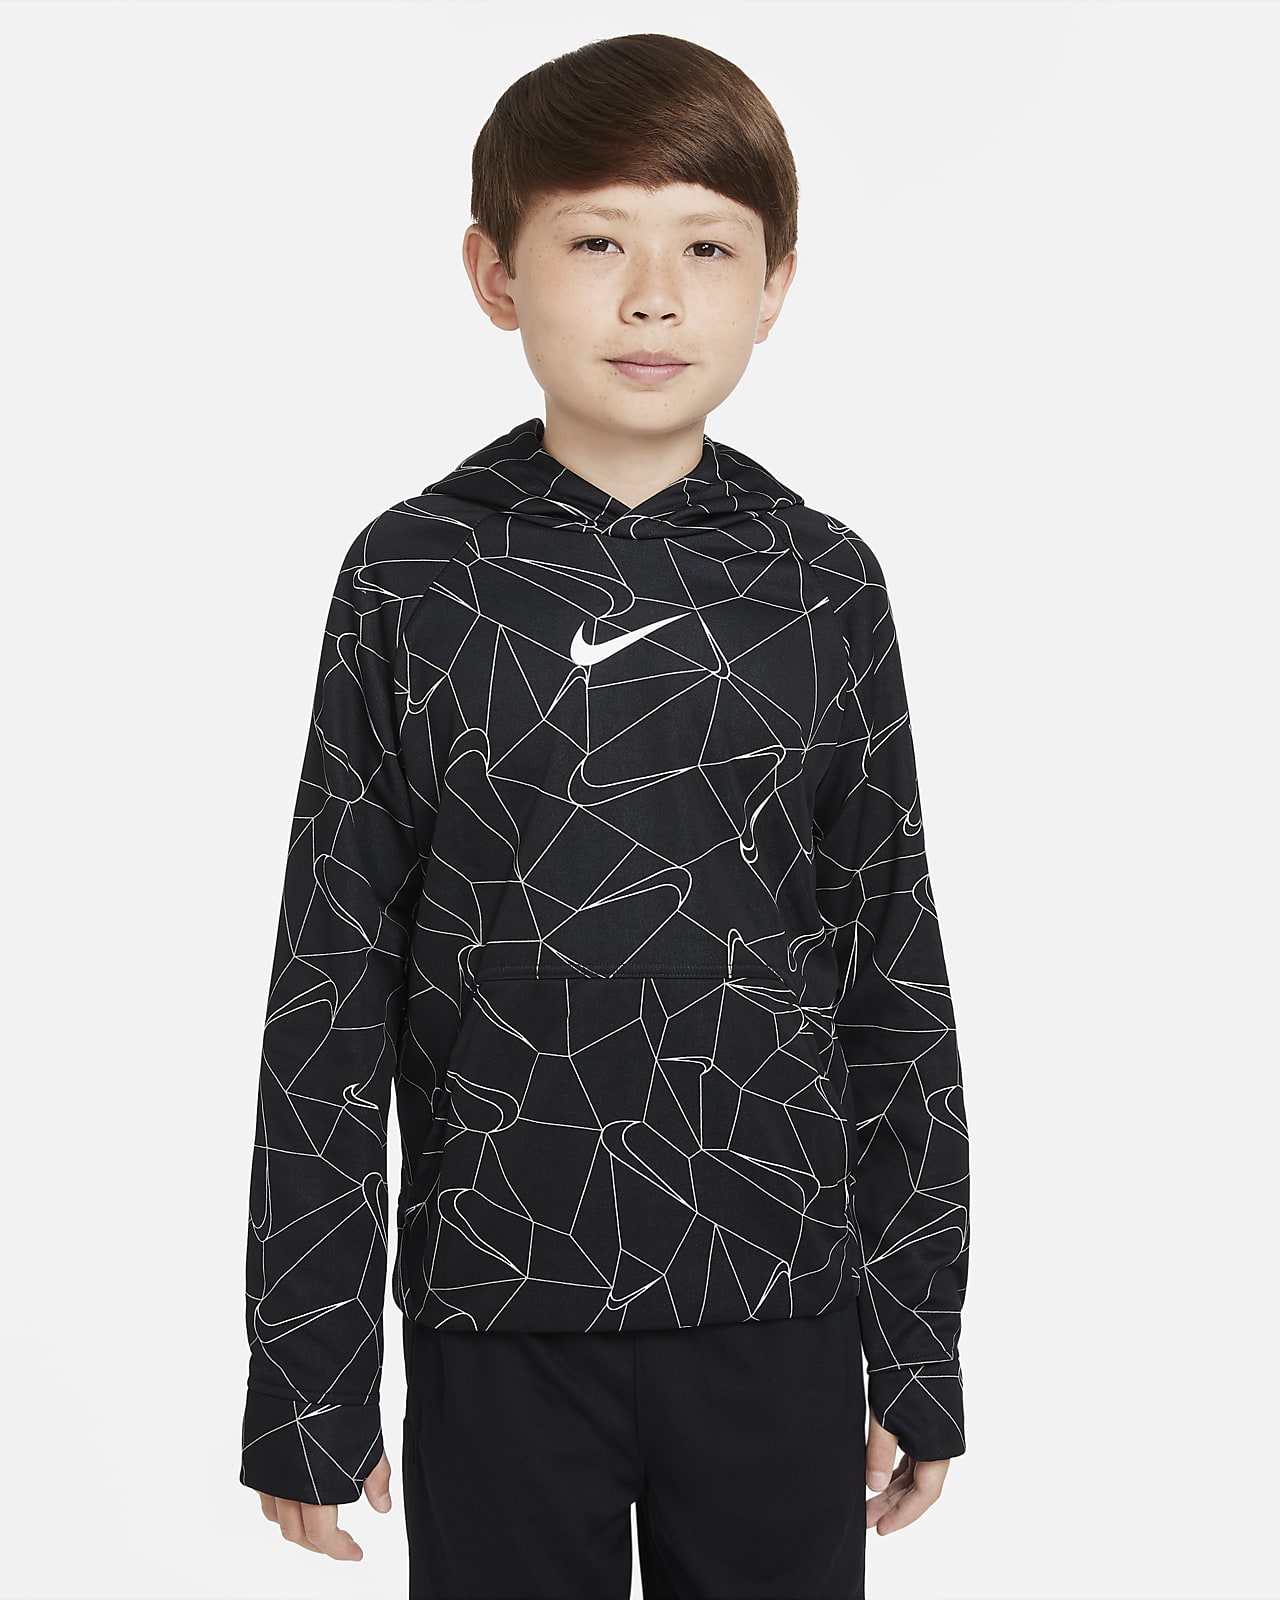 Nike Therma-FIT Older Kids' (Boys') Printed Pullover Hoodie